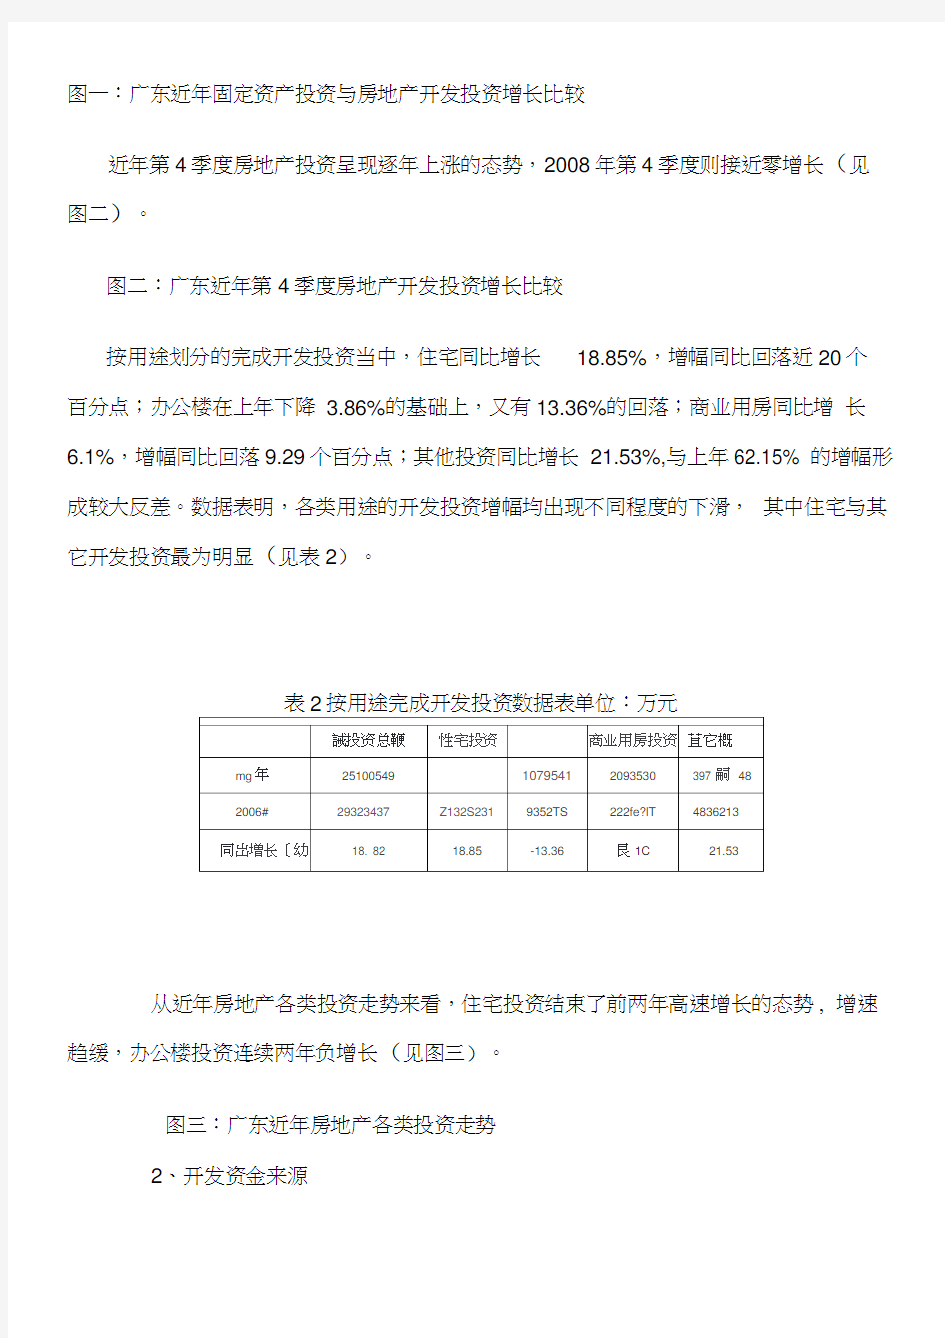 2008年广东房地产市场分析报告